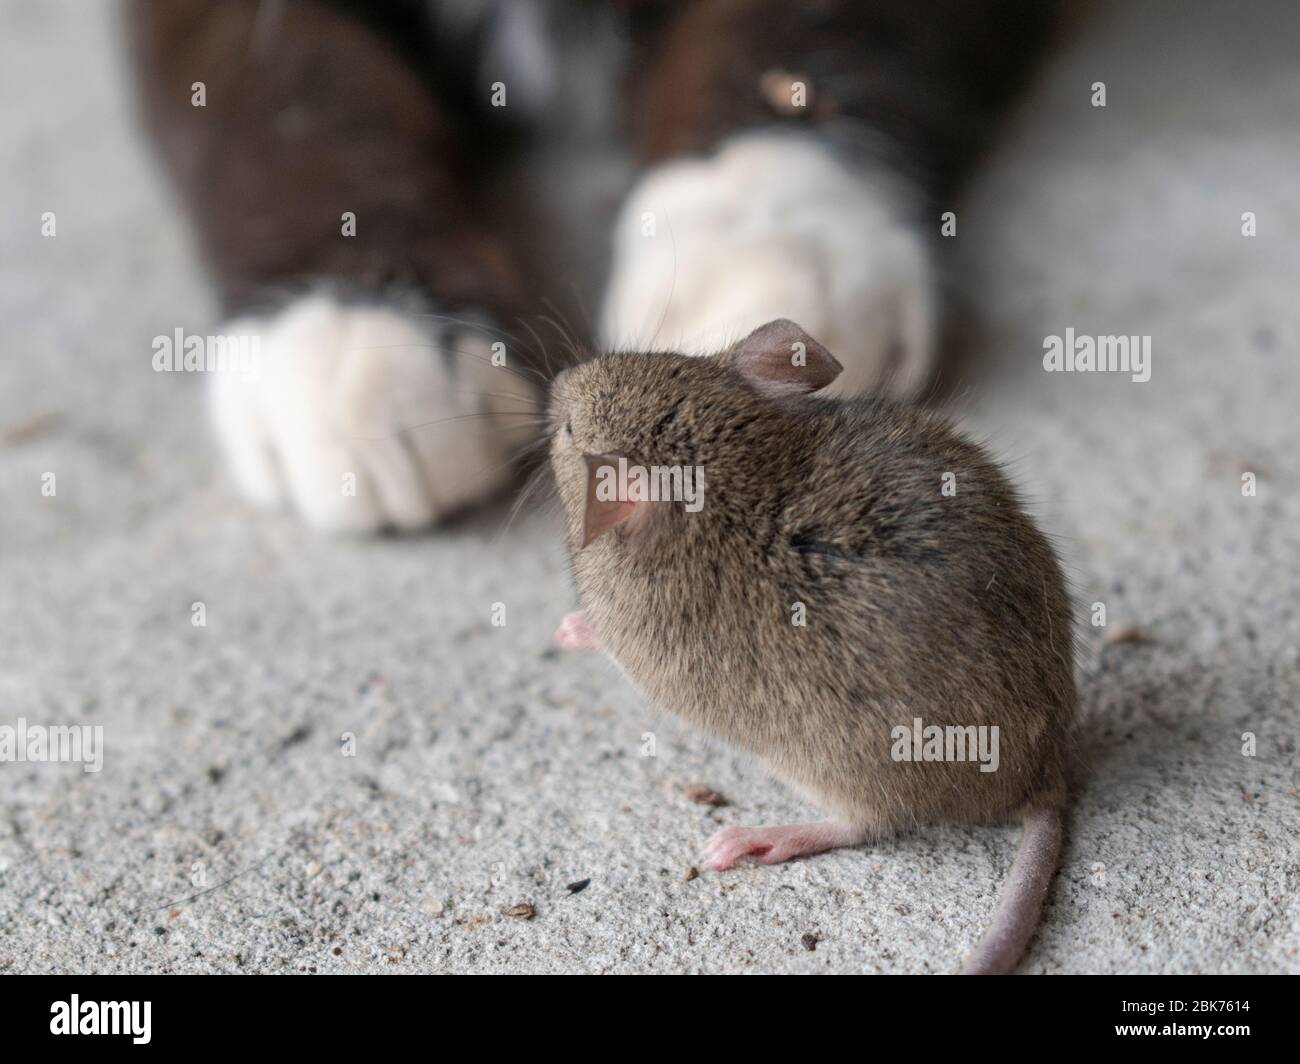 Mouse in piedi davanti a un gatto e guardandola. Primo piano mouse e gatto. Catena alimentare degli animali Foto Stock